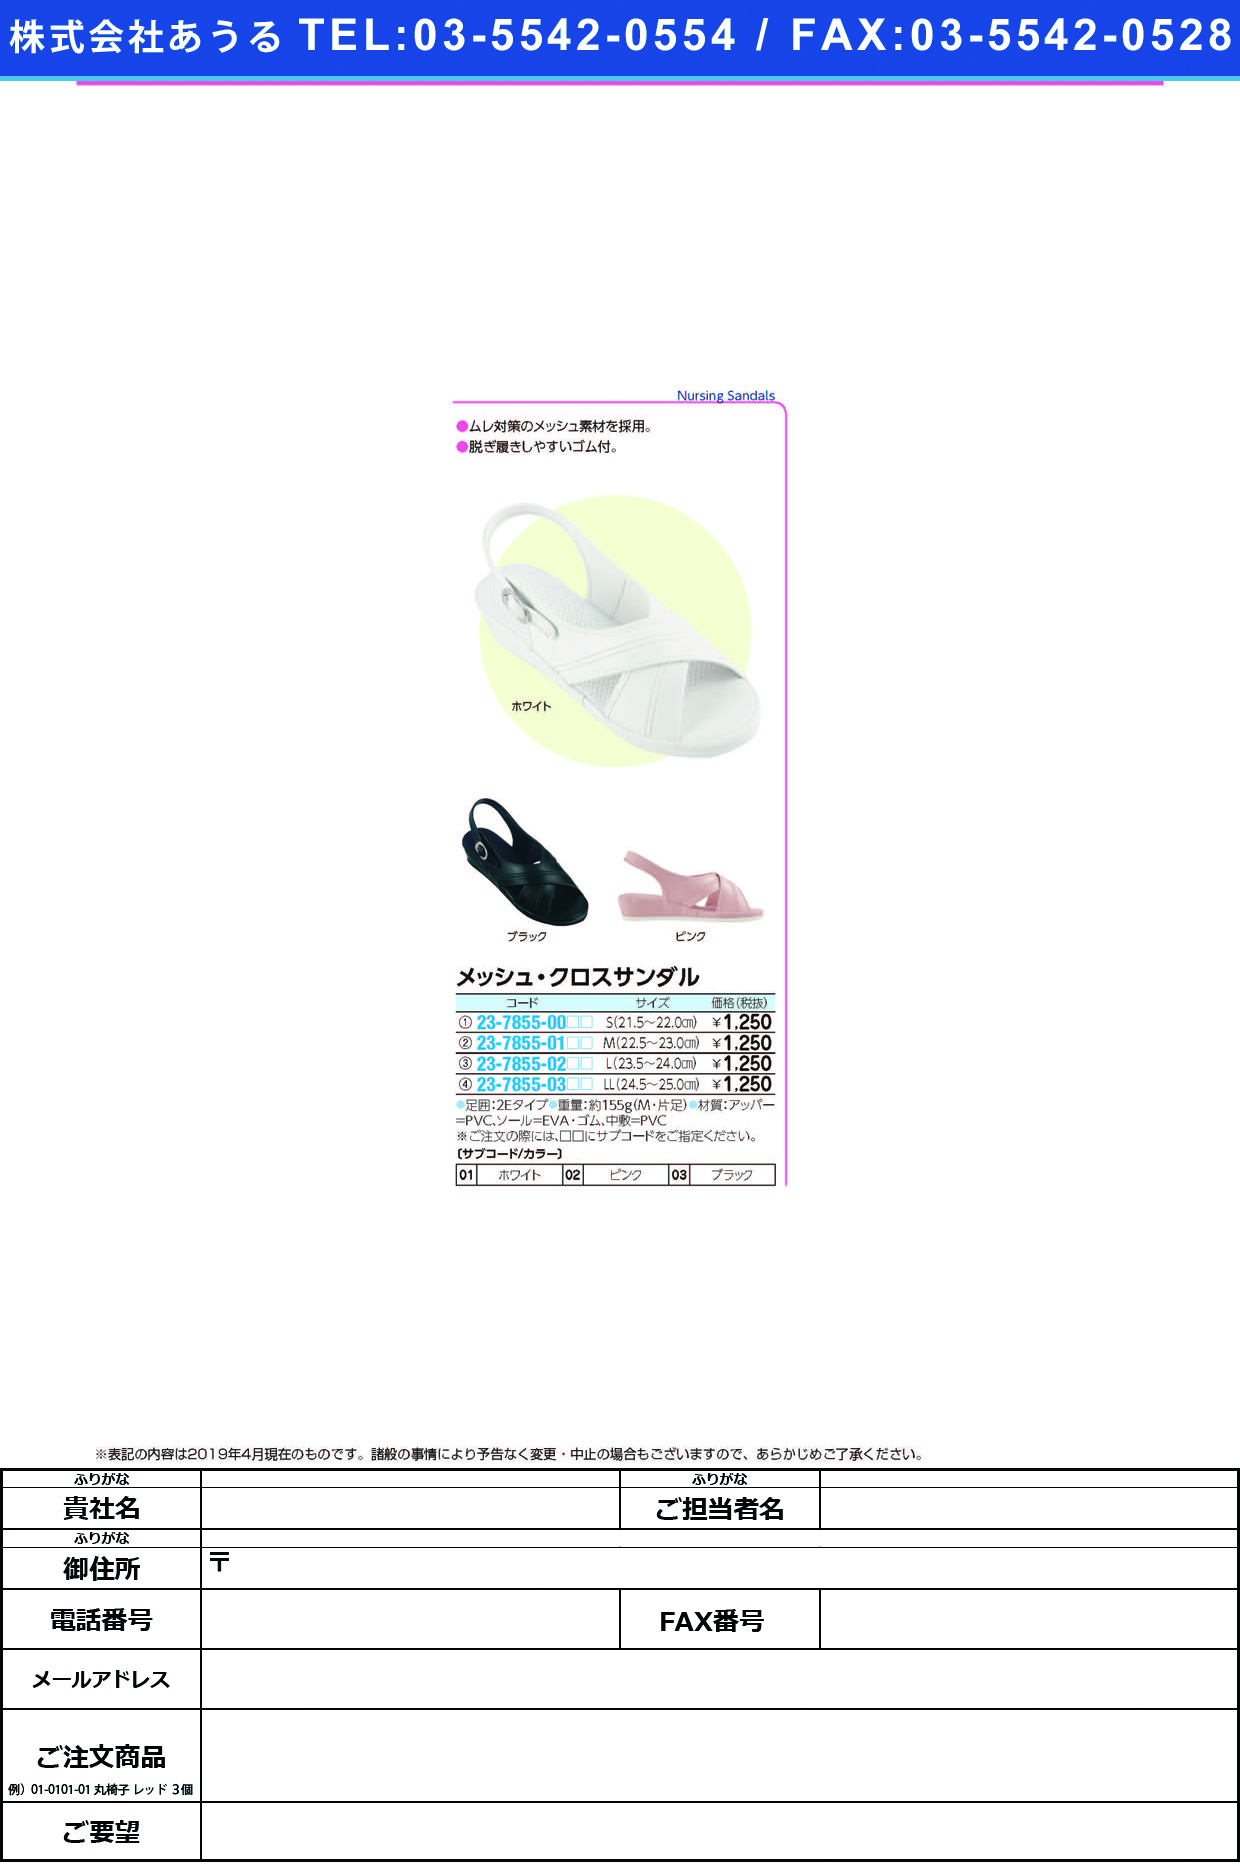 (23-7855-00)メッシュ・クロスサンダル S(21.5-22.0CM) ﾒｯｼｭｸﾛｽｻﾝﾀﾞﾙ ホワイト(ファーストレイト)【1足単位】【2019年カタログ商品】